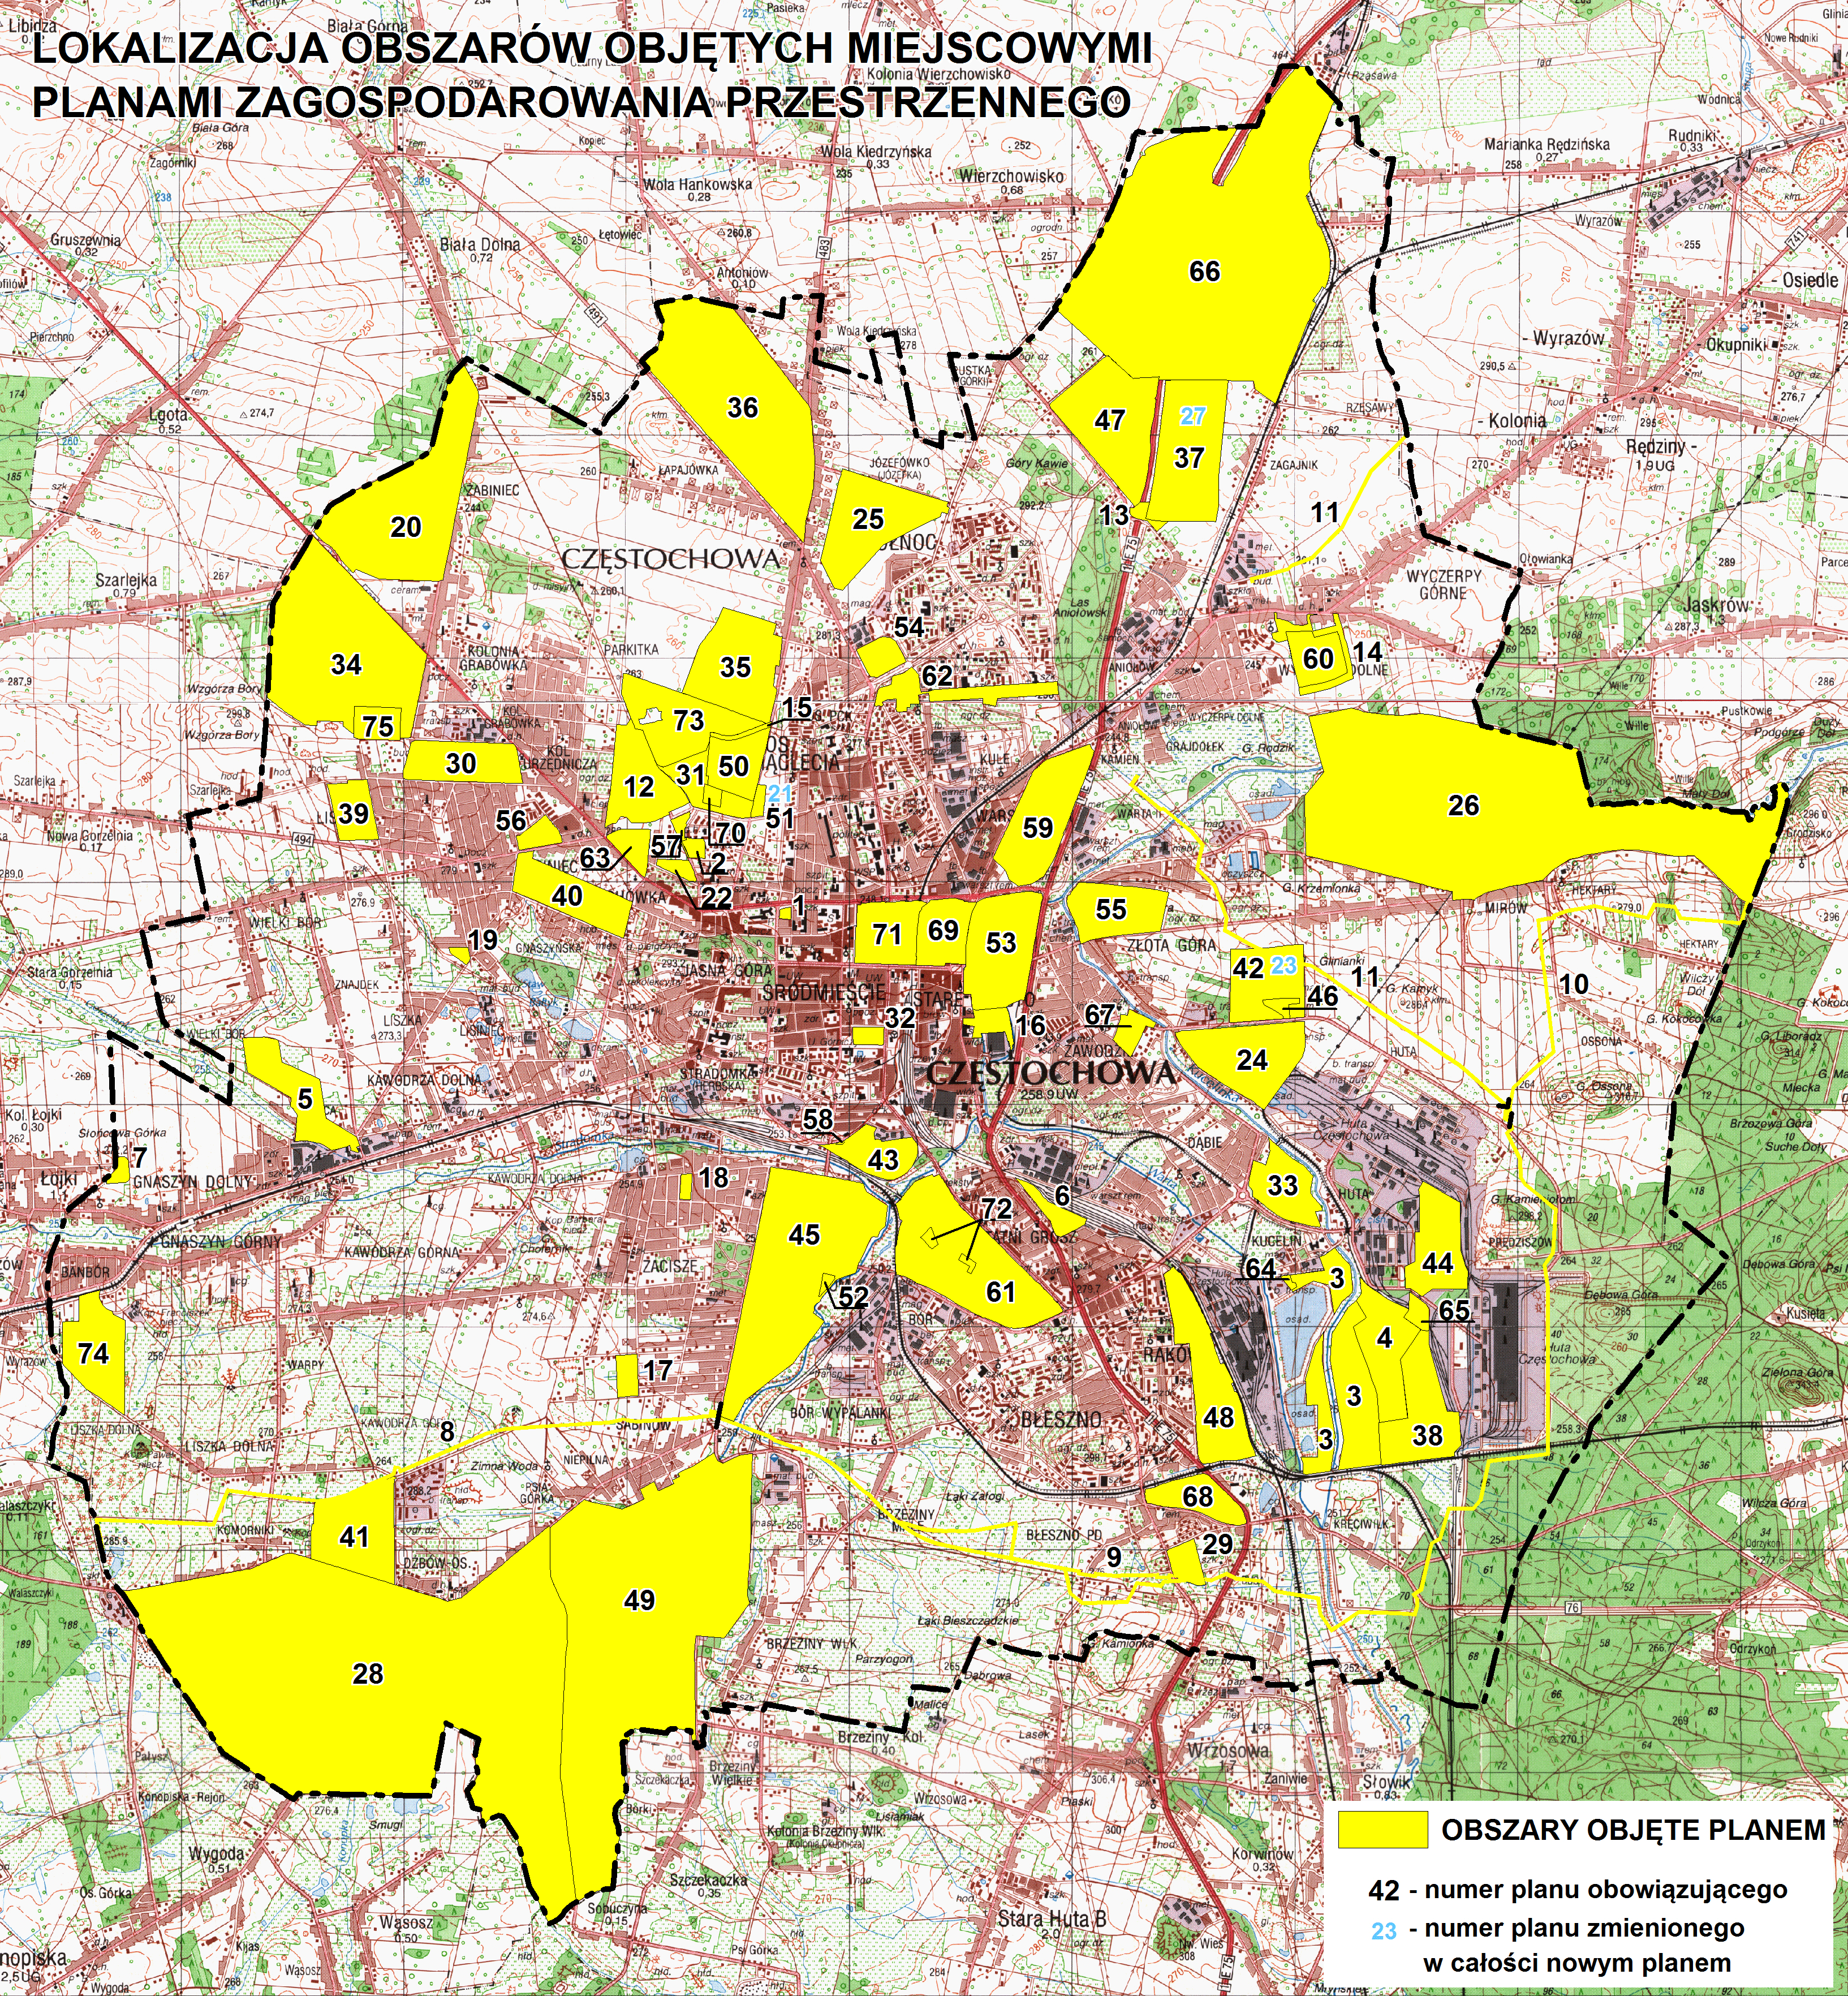 Rysunek zawiera pomniejszoną mapę Częstochowy z lokalizacjami planów miejscowych oznaczonych ponumerowanymi żółtymi obszarami.